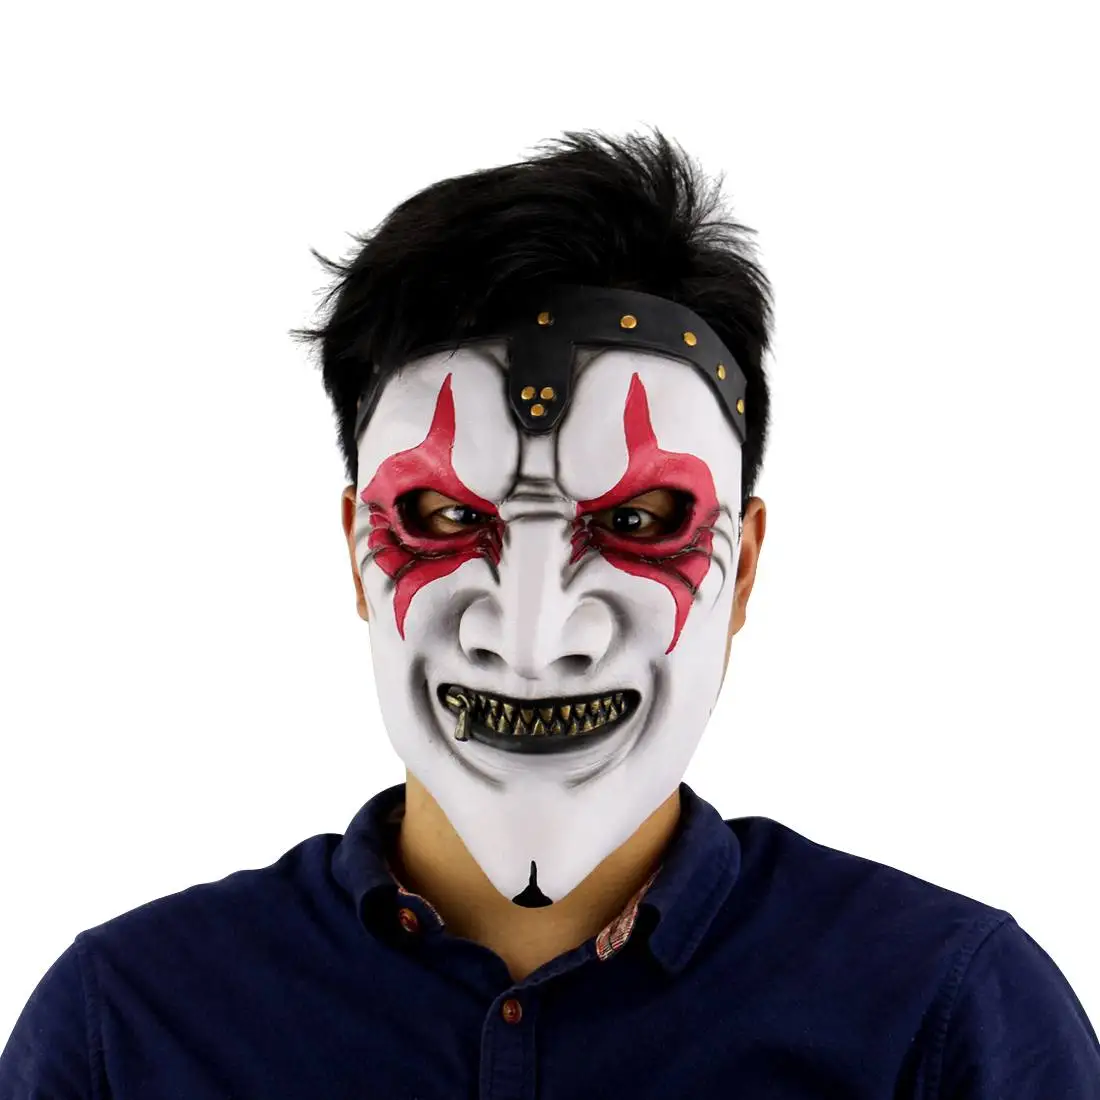 Хэллоуин страшная маска клоуна длинные волосы призрак страшная маска реквизит грудж призрак Хеджирование маска зомби реалистичный Латекс маски страшные - Цвет: RL0176B